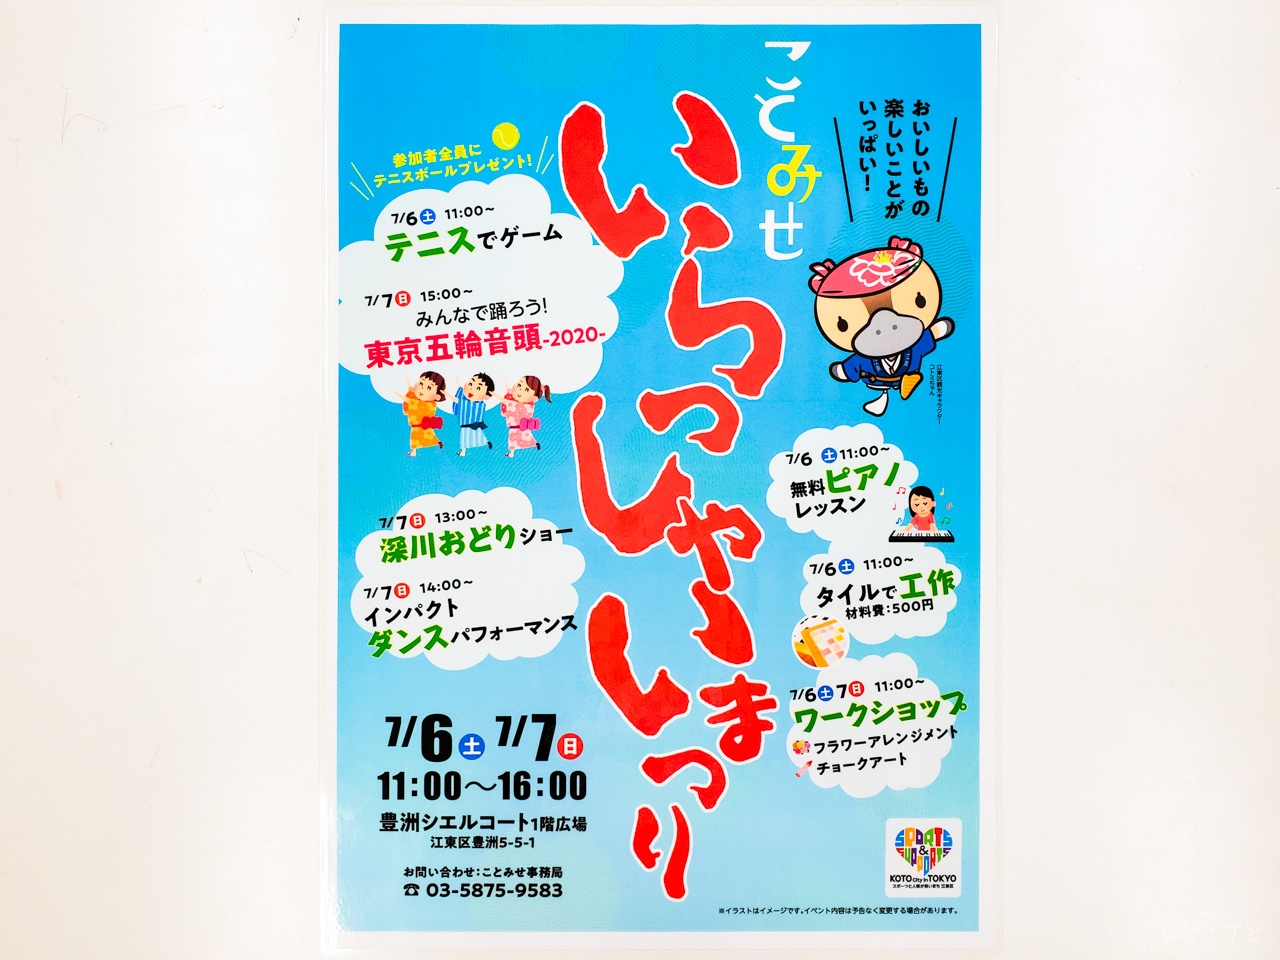 「ことみせいらっしゃい祭り in 豊洲 2019」が開催へ！江東区内のお店が豊洲に集まる二日間！